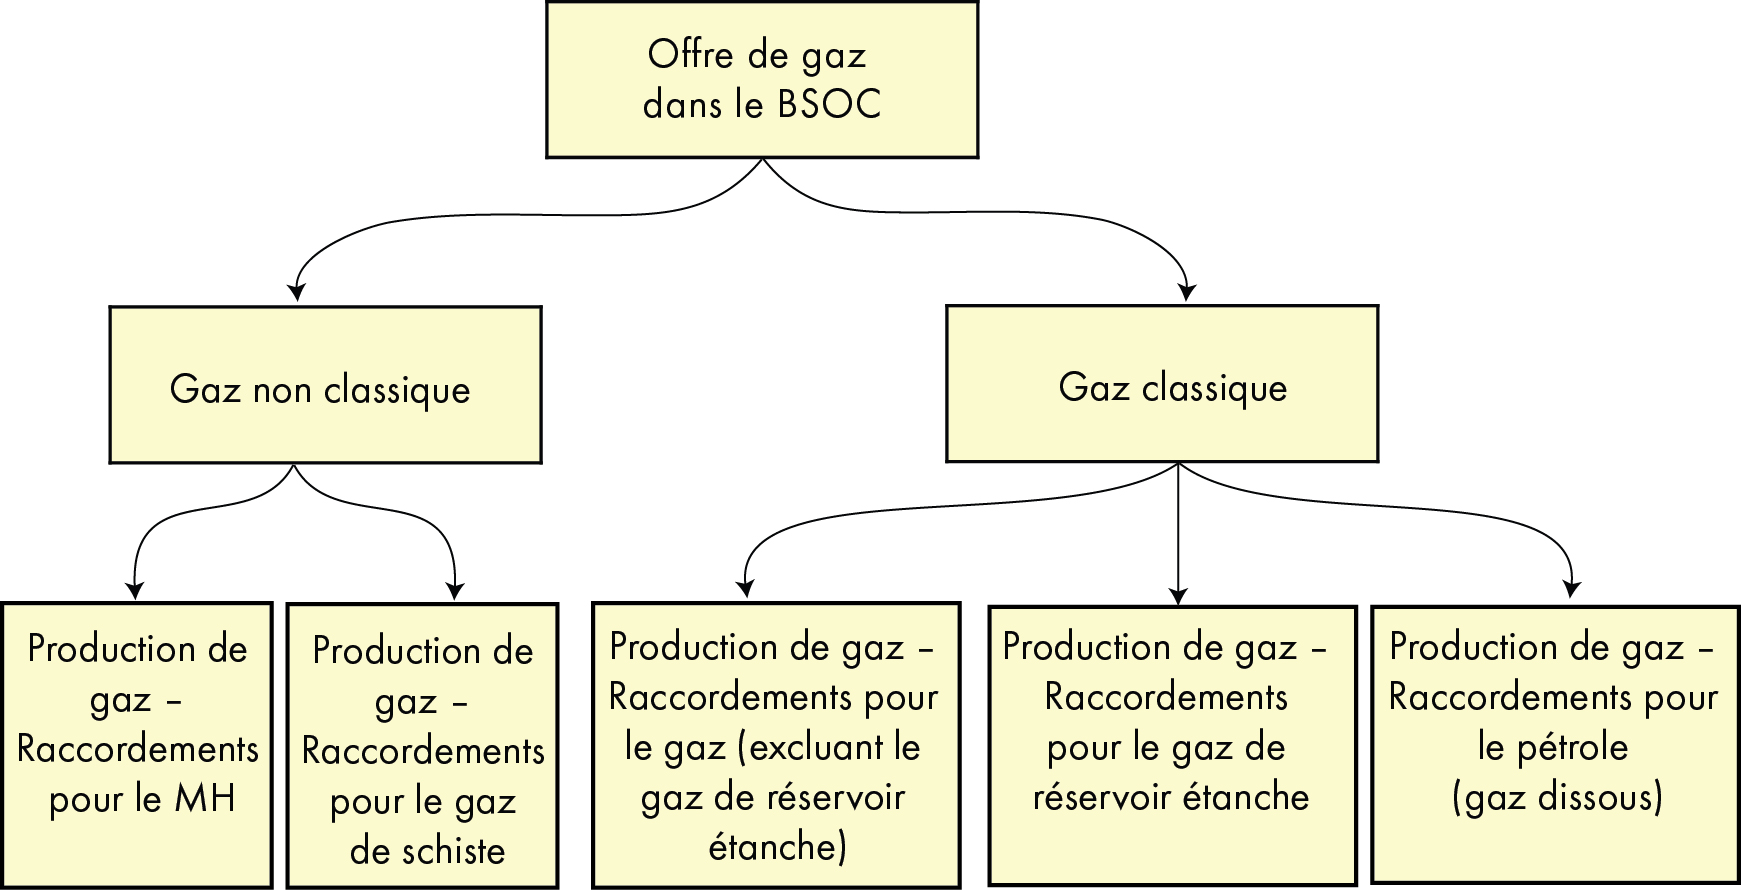 Figure A1.1 – Principales catégories d’offre gazière dans le BSOC pour l’évaluation de la productibilité